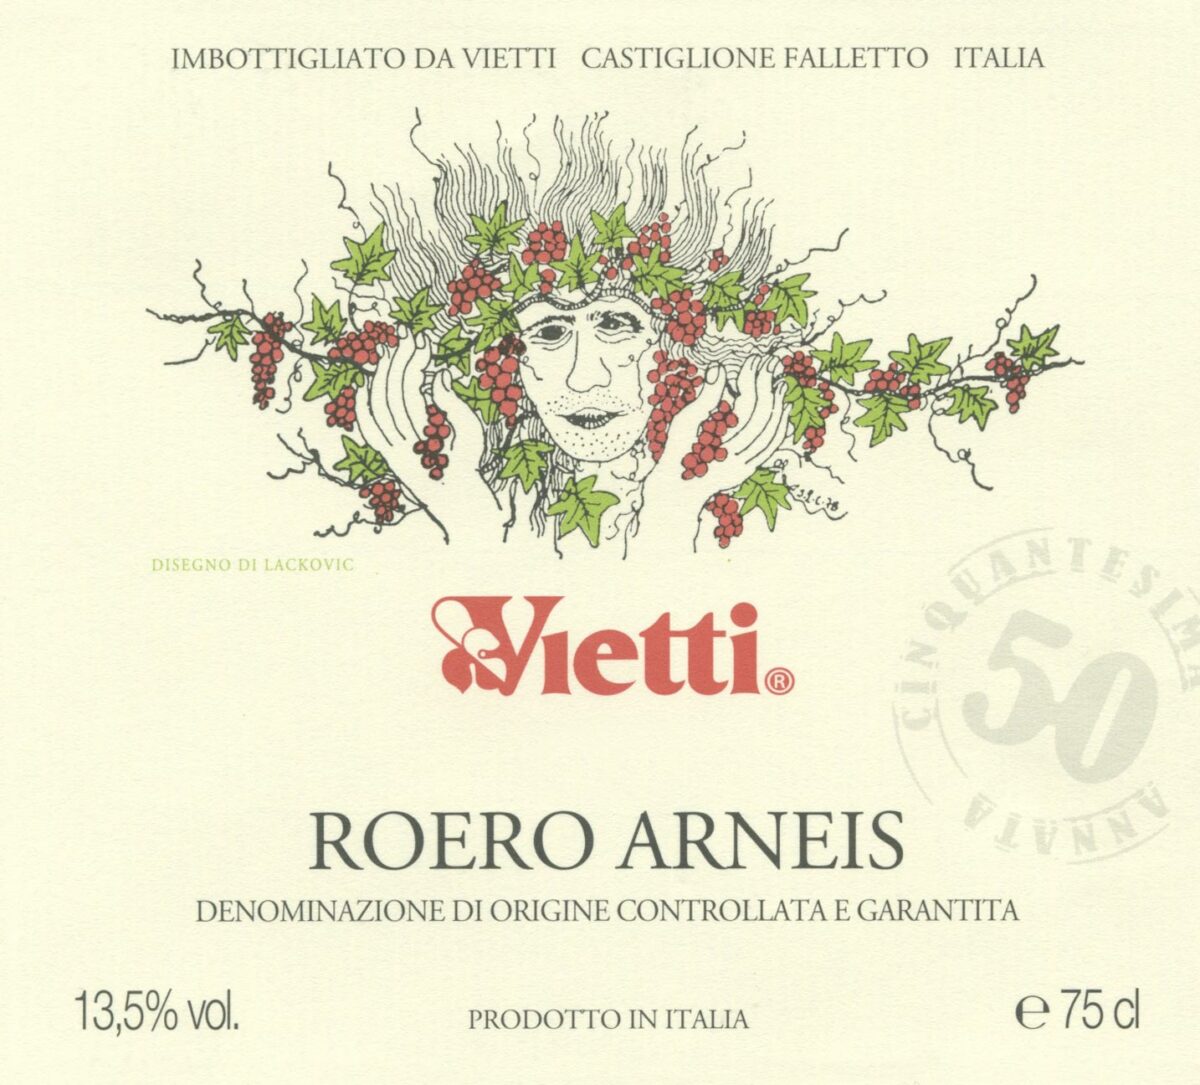 Bottle lable of Vietti's Roero Arneis